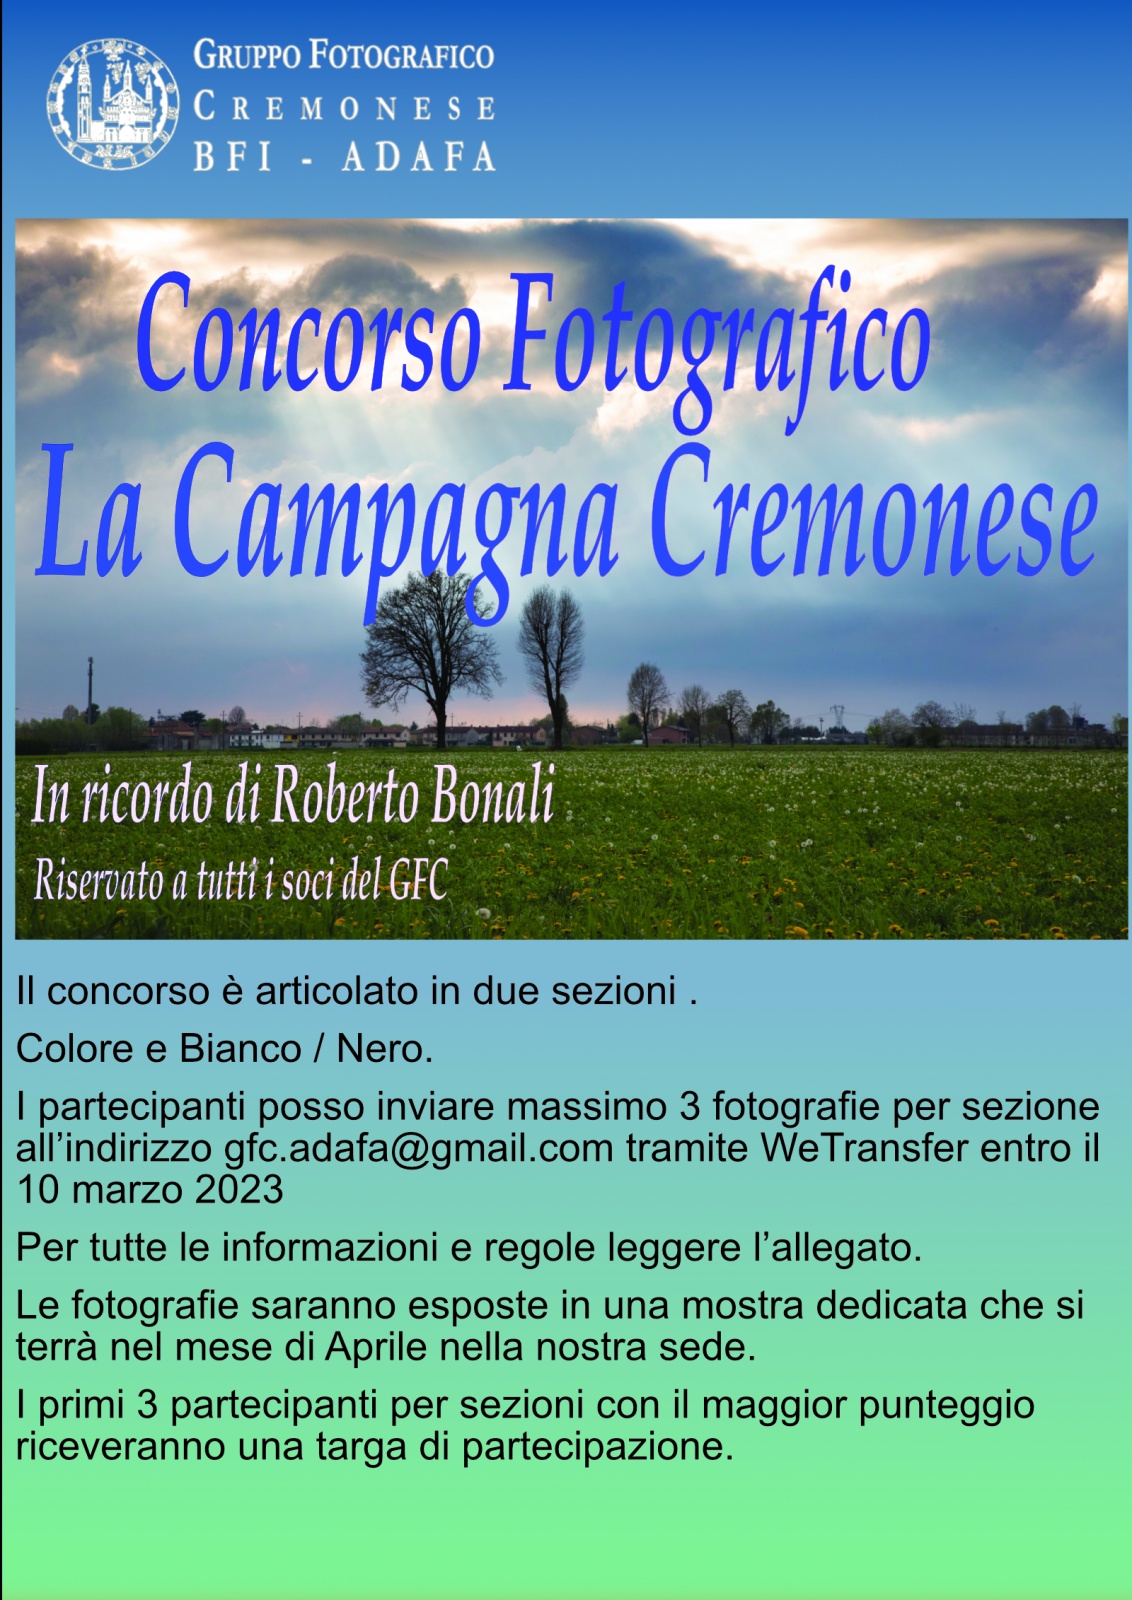 Concorso Roberto Bonali " La Campagna Cremonese "